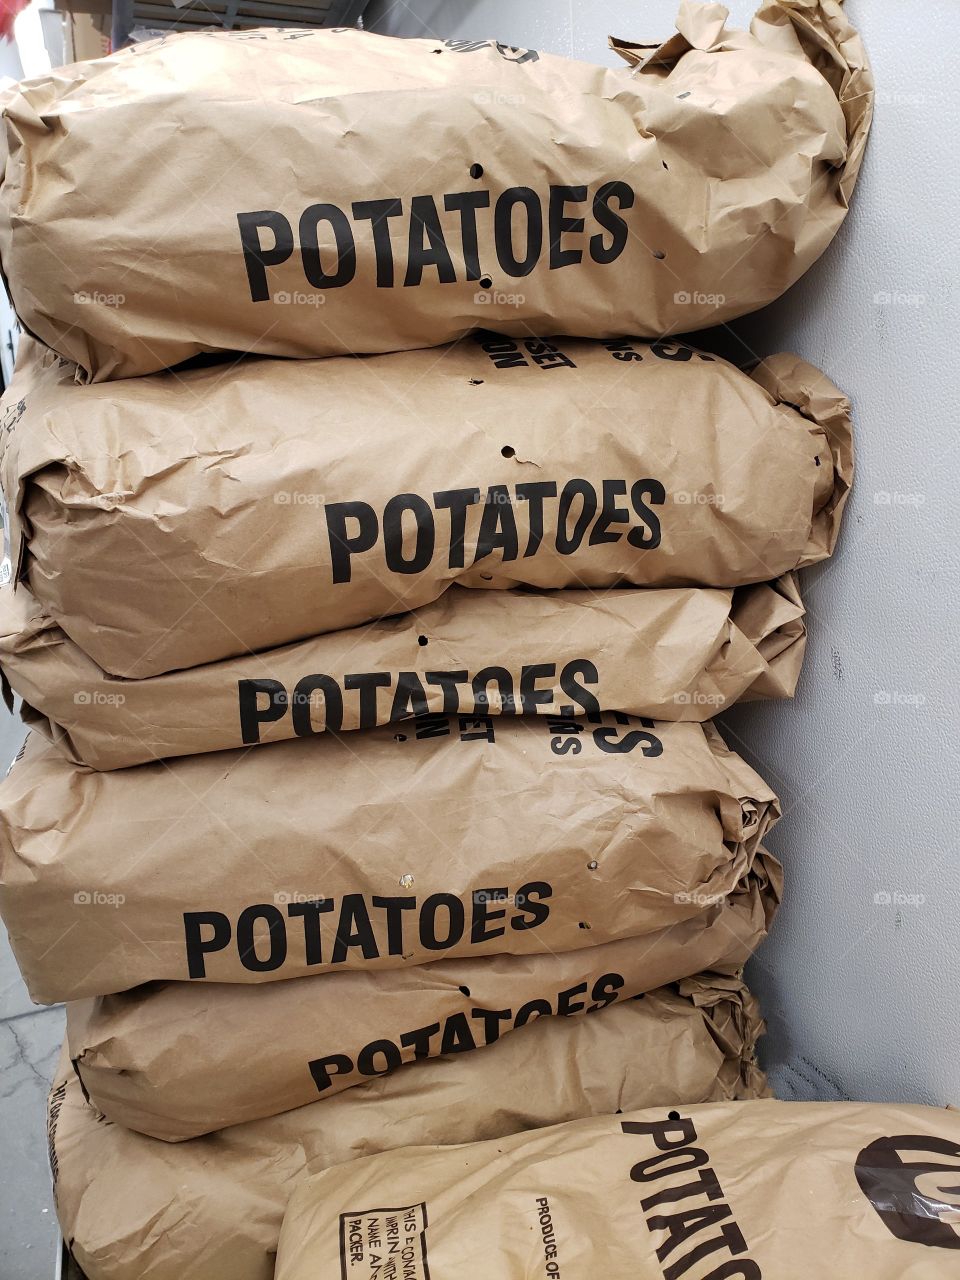 Bags of potatoes